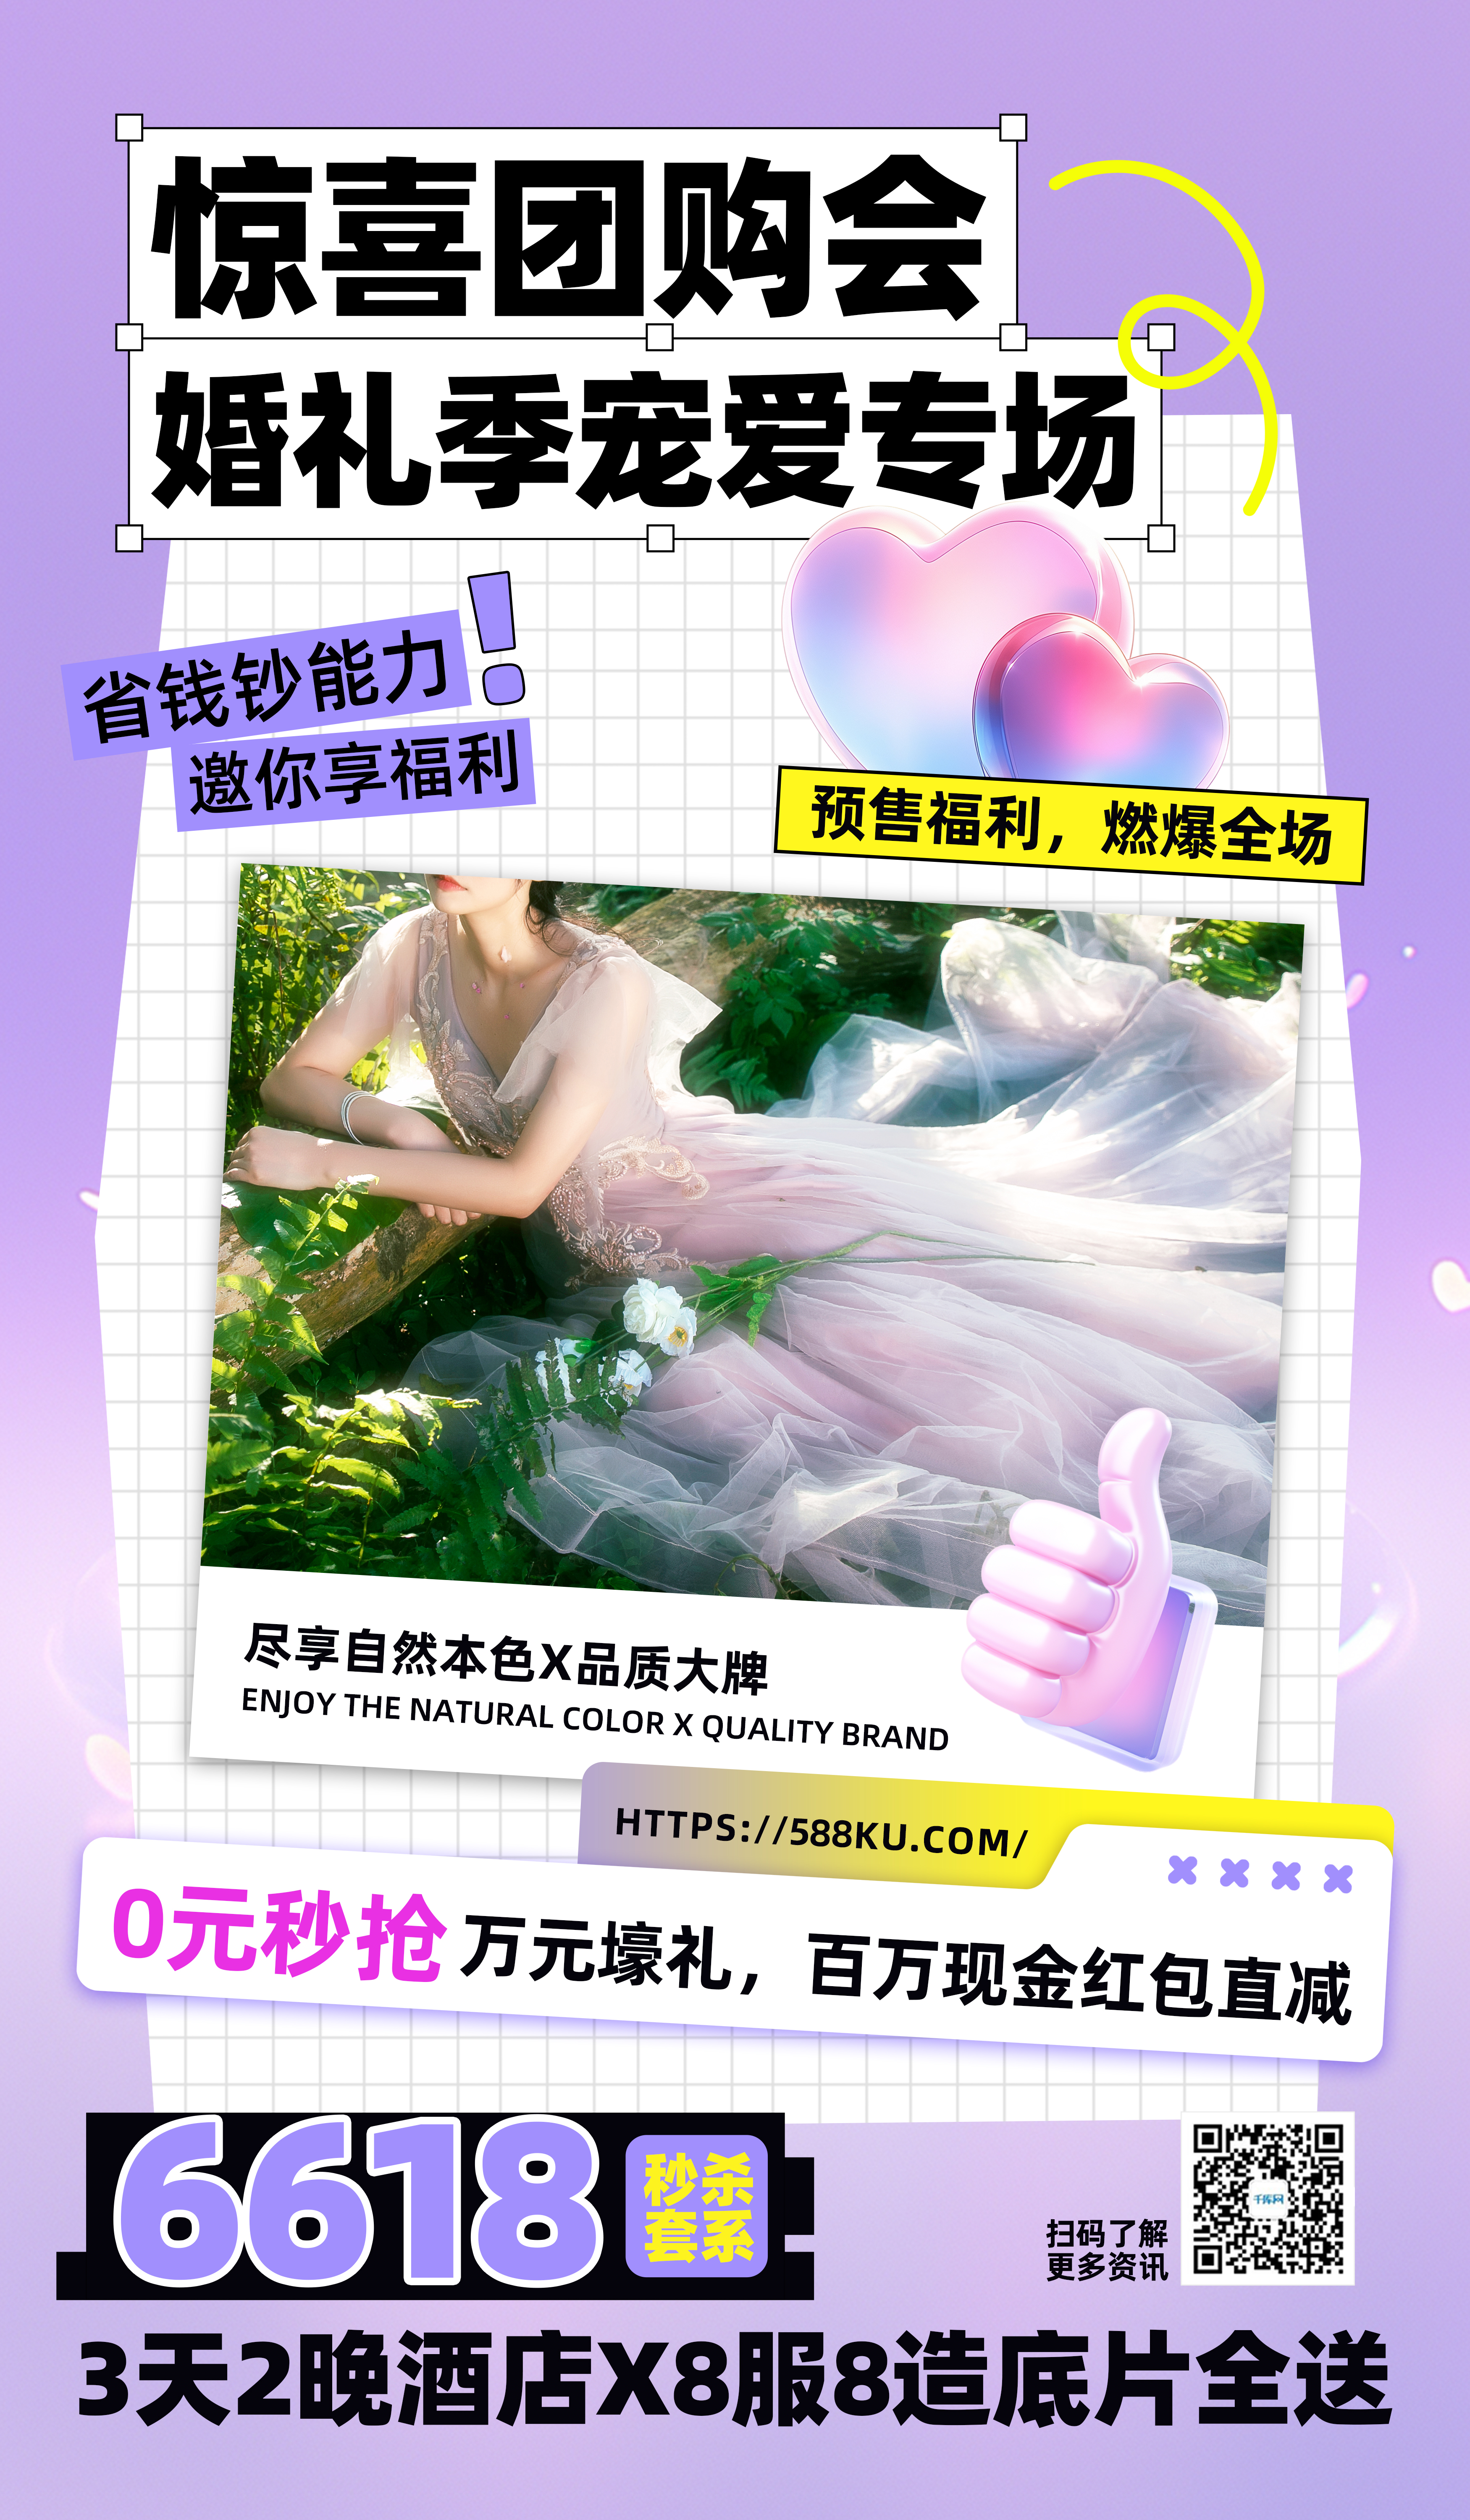 婚礼季人物紫色创意简约广告宣传海报图片